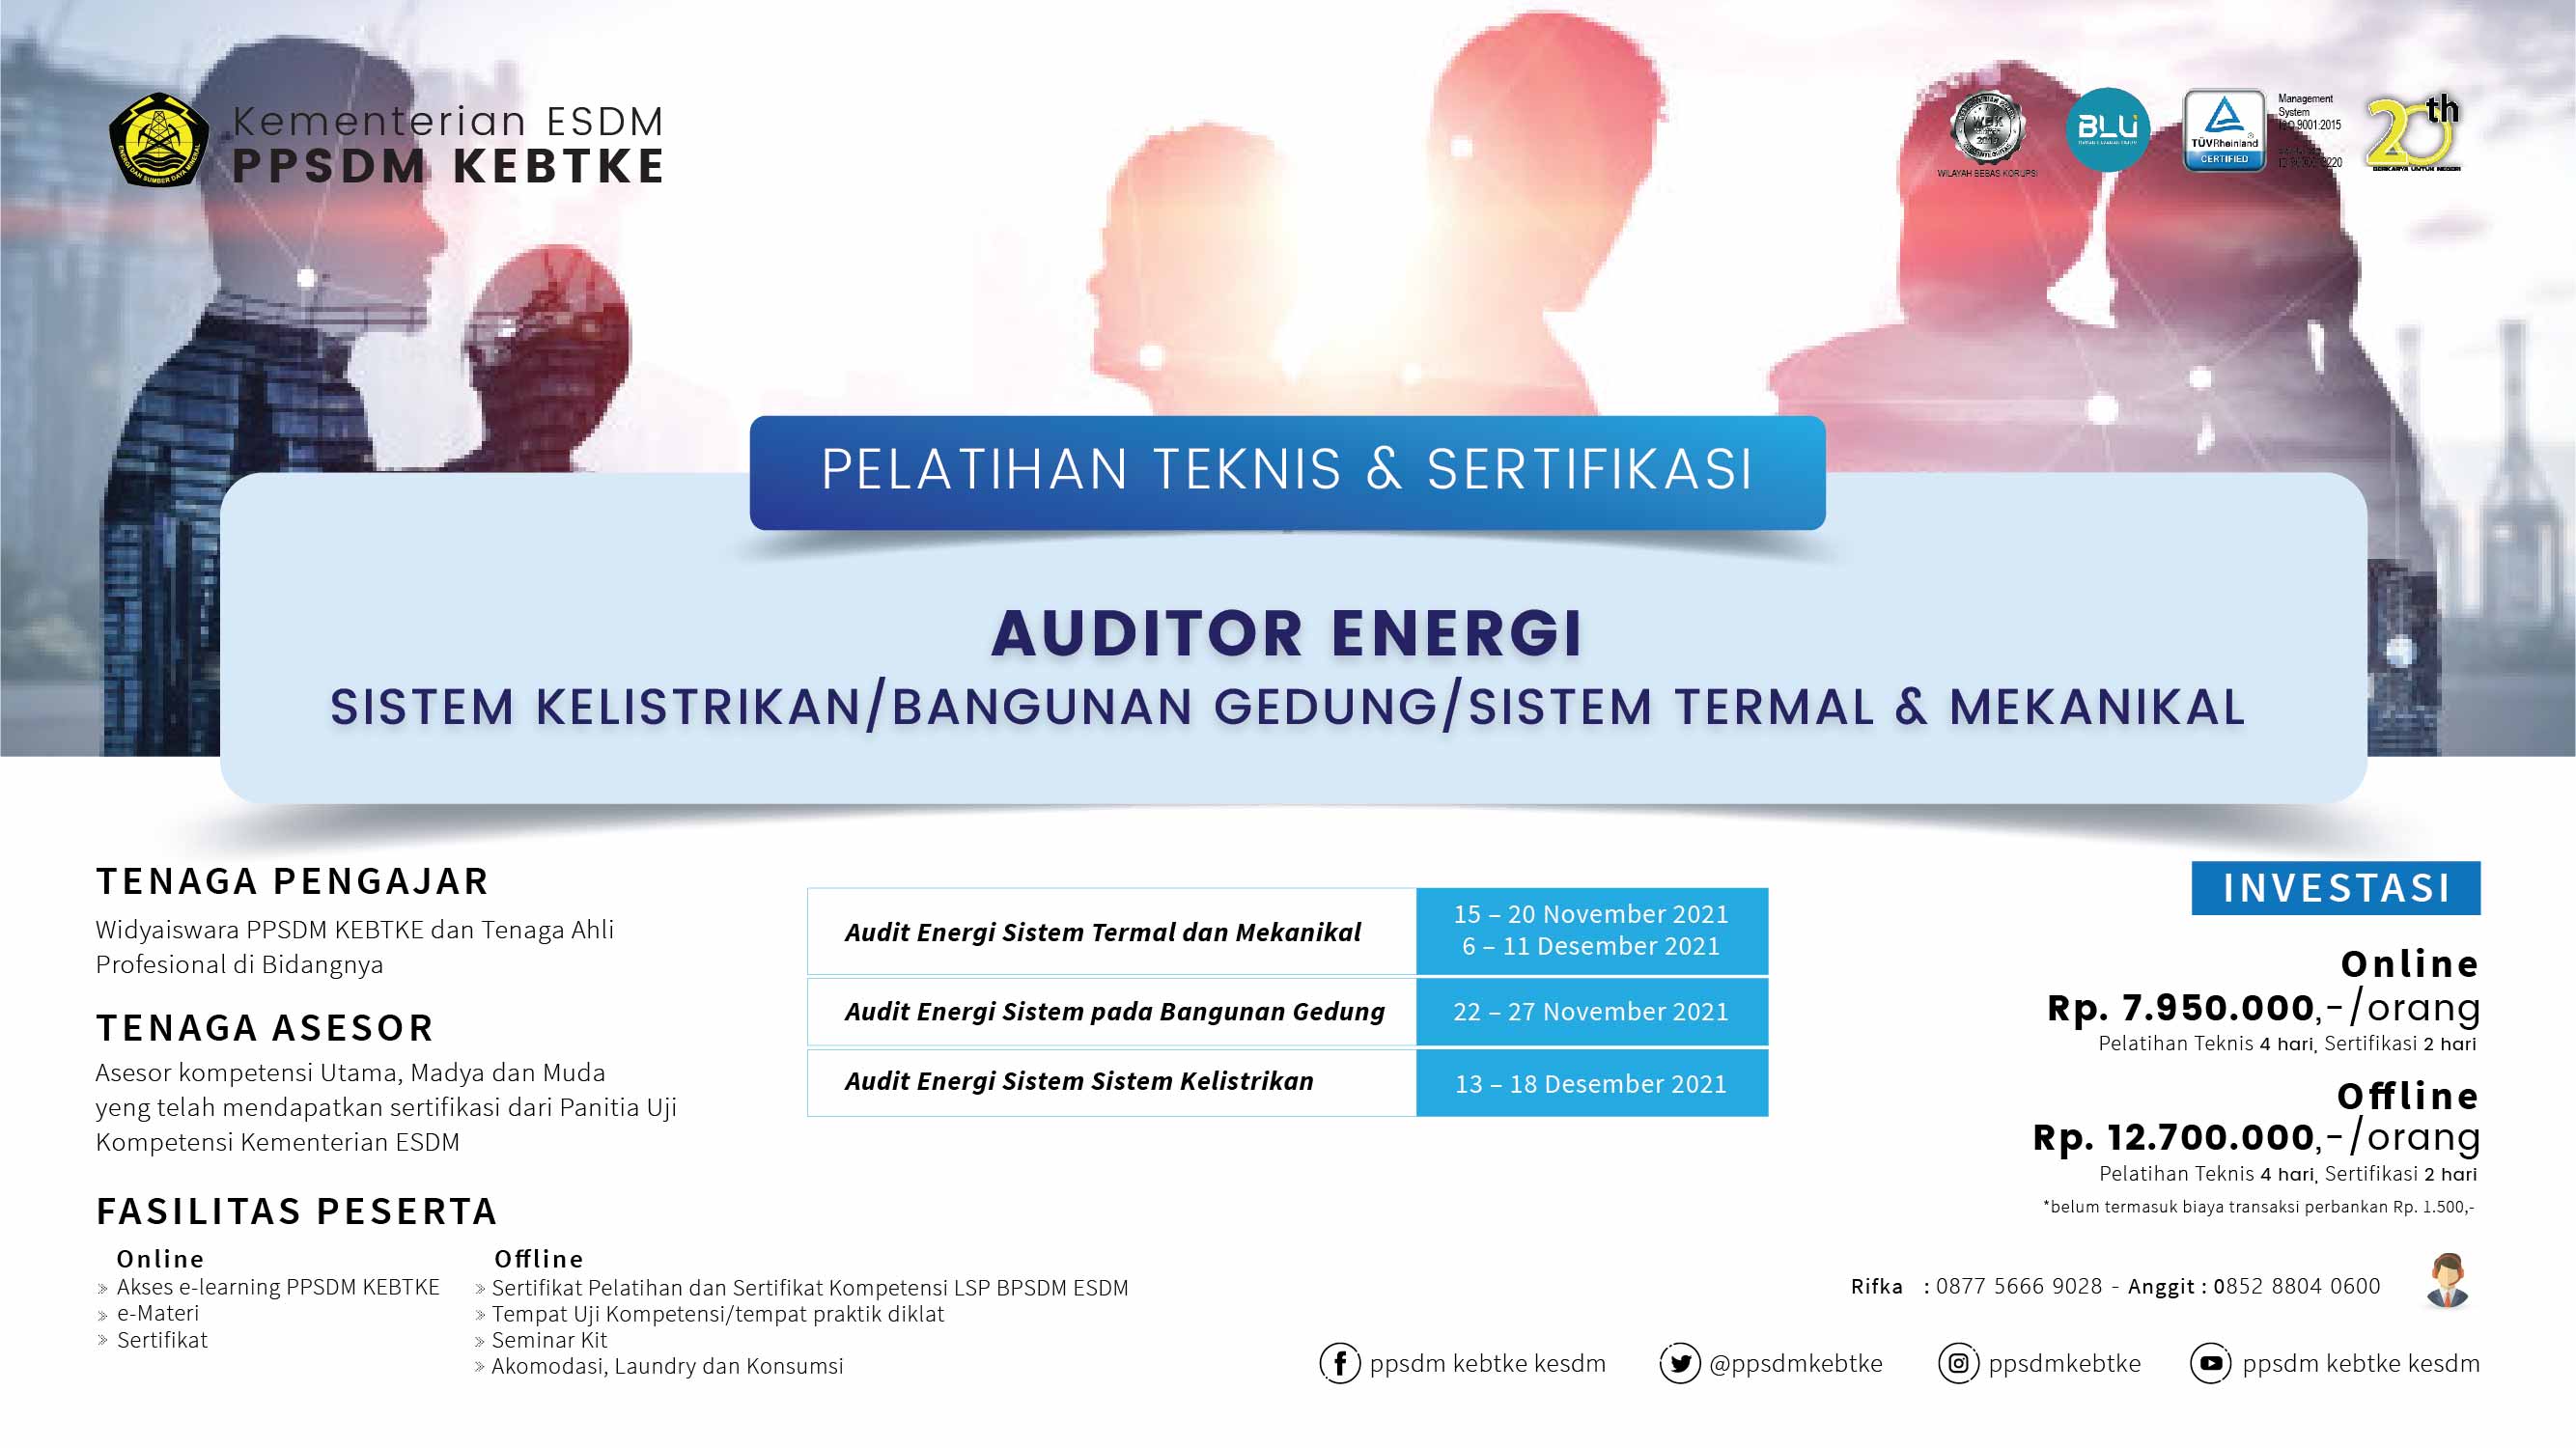 Pelatihan Teknis & Sertifikasi Auditor Energi (November - Desember 2021)